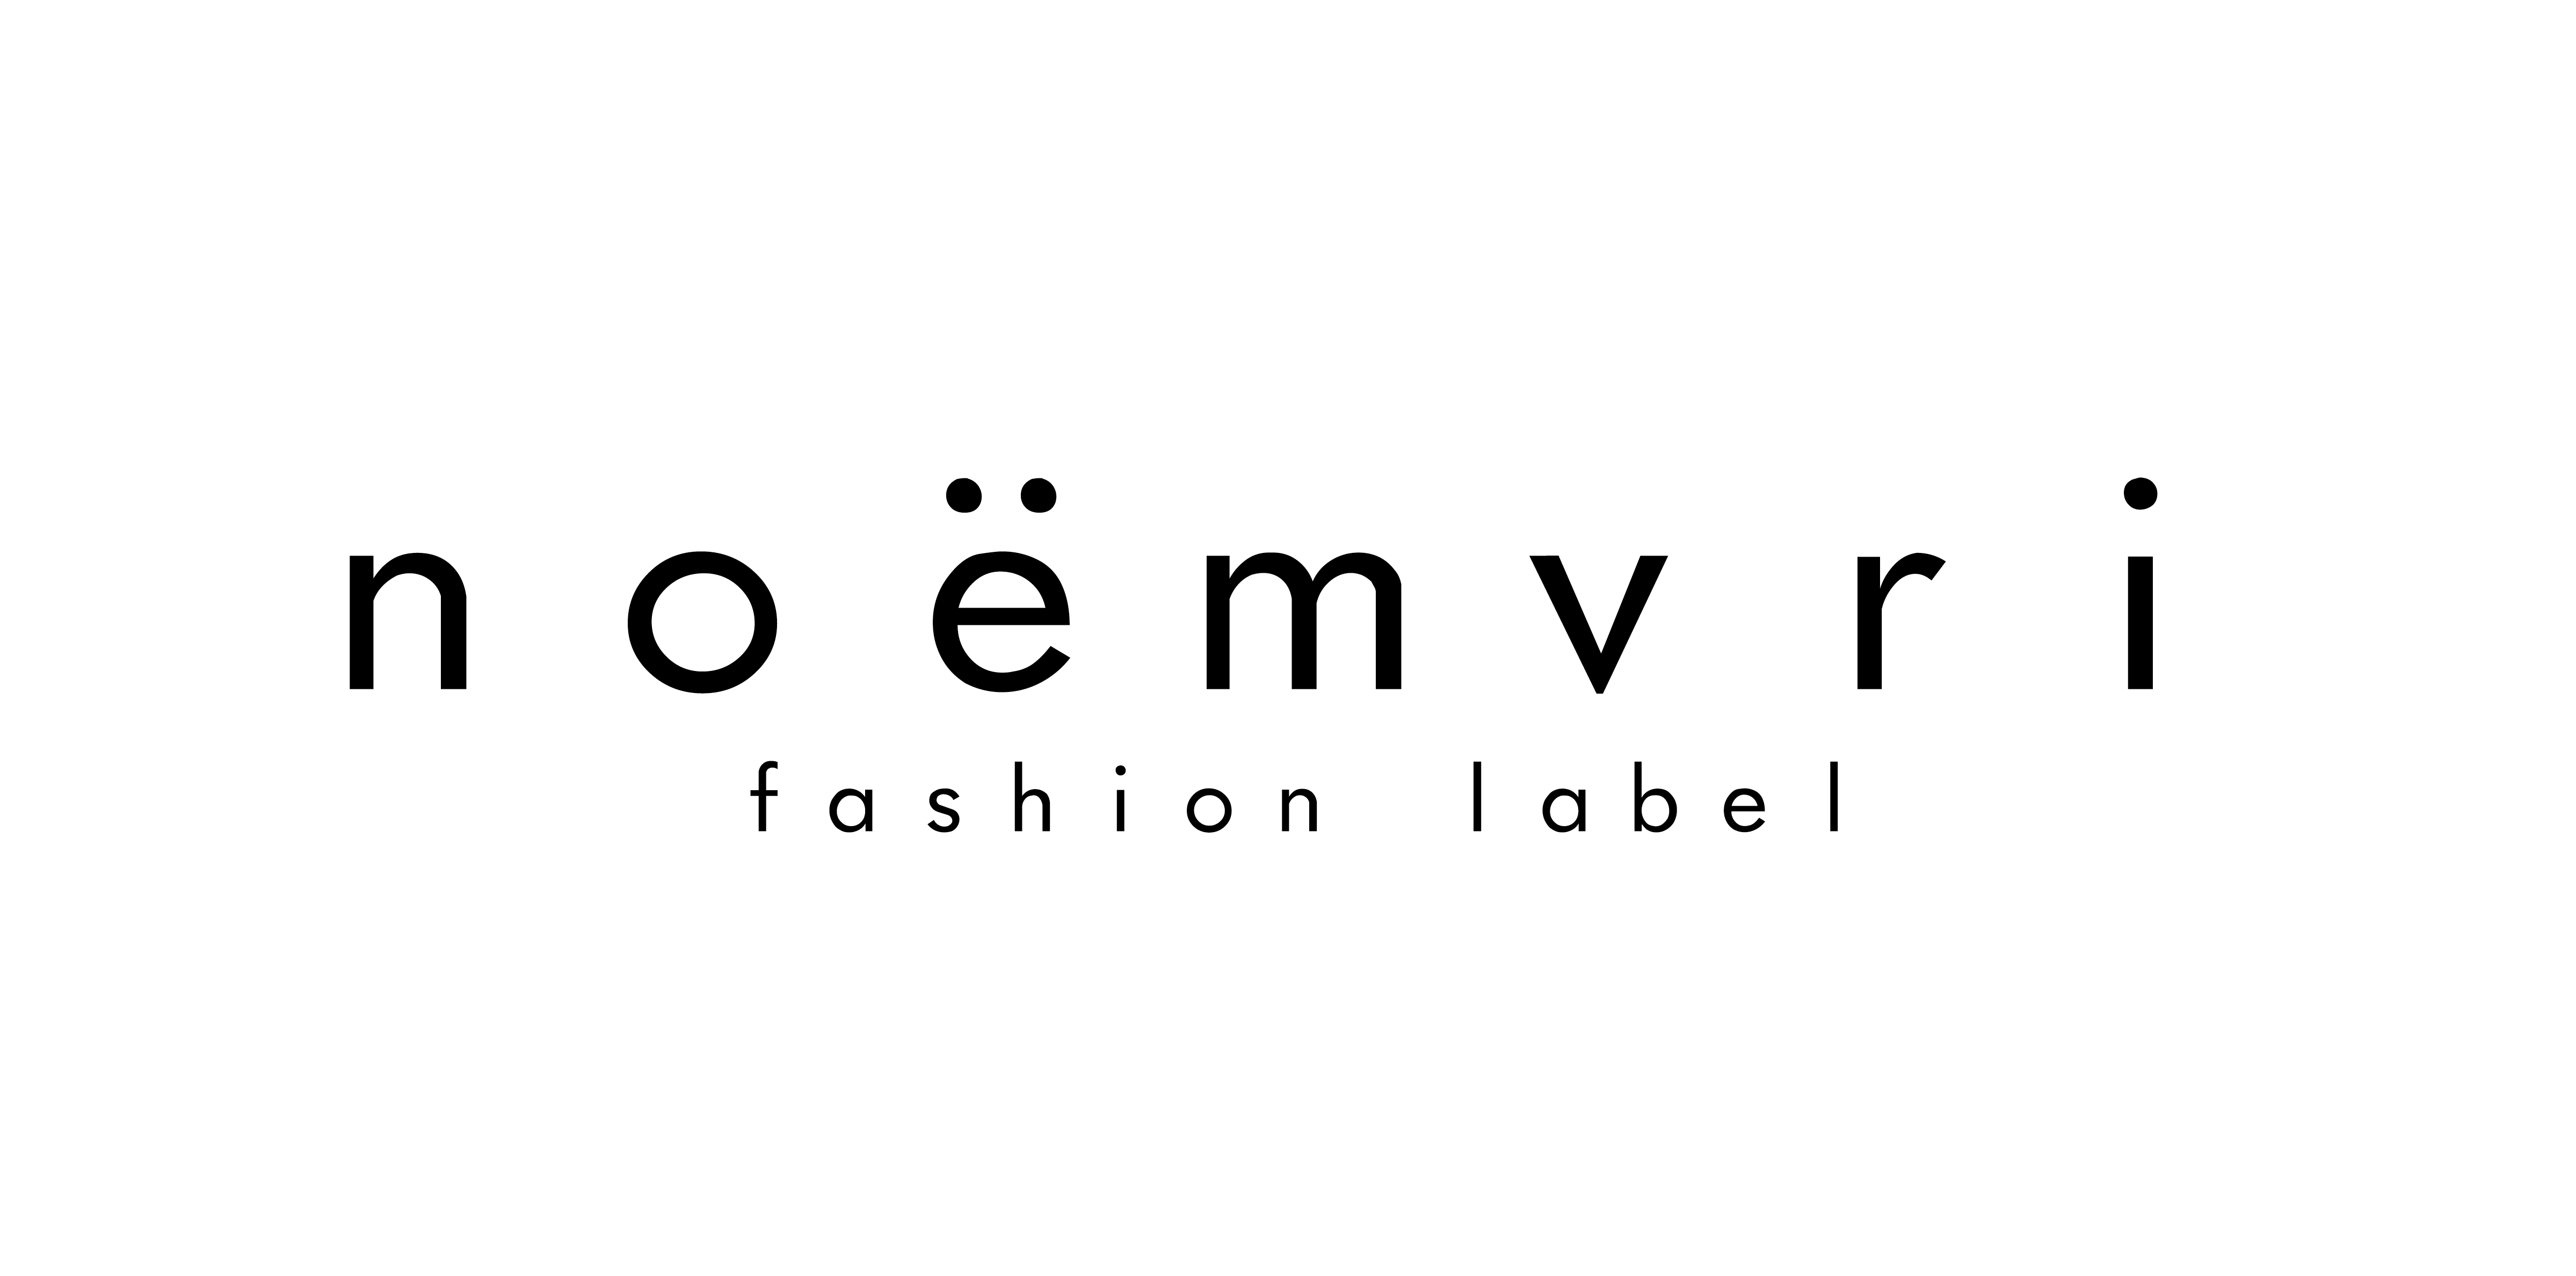 noёmvri fashion label